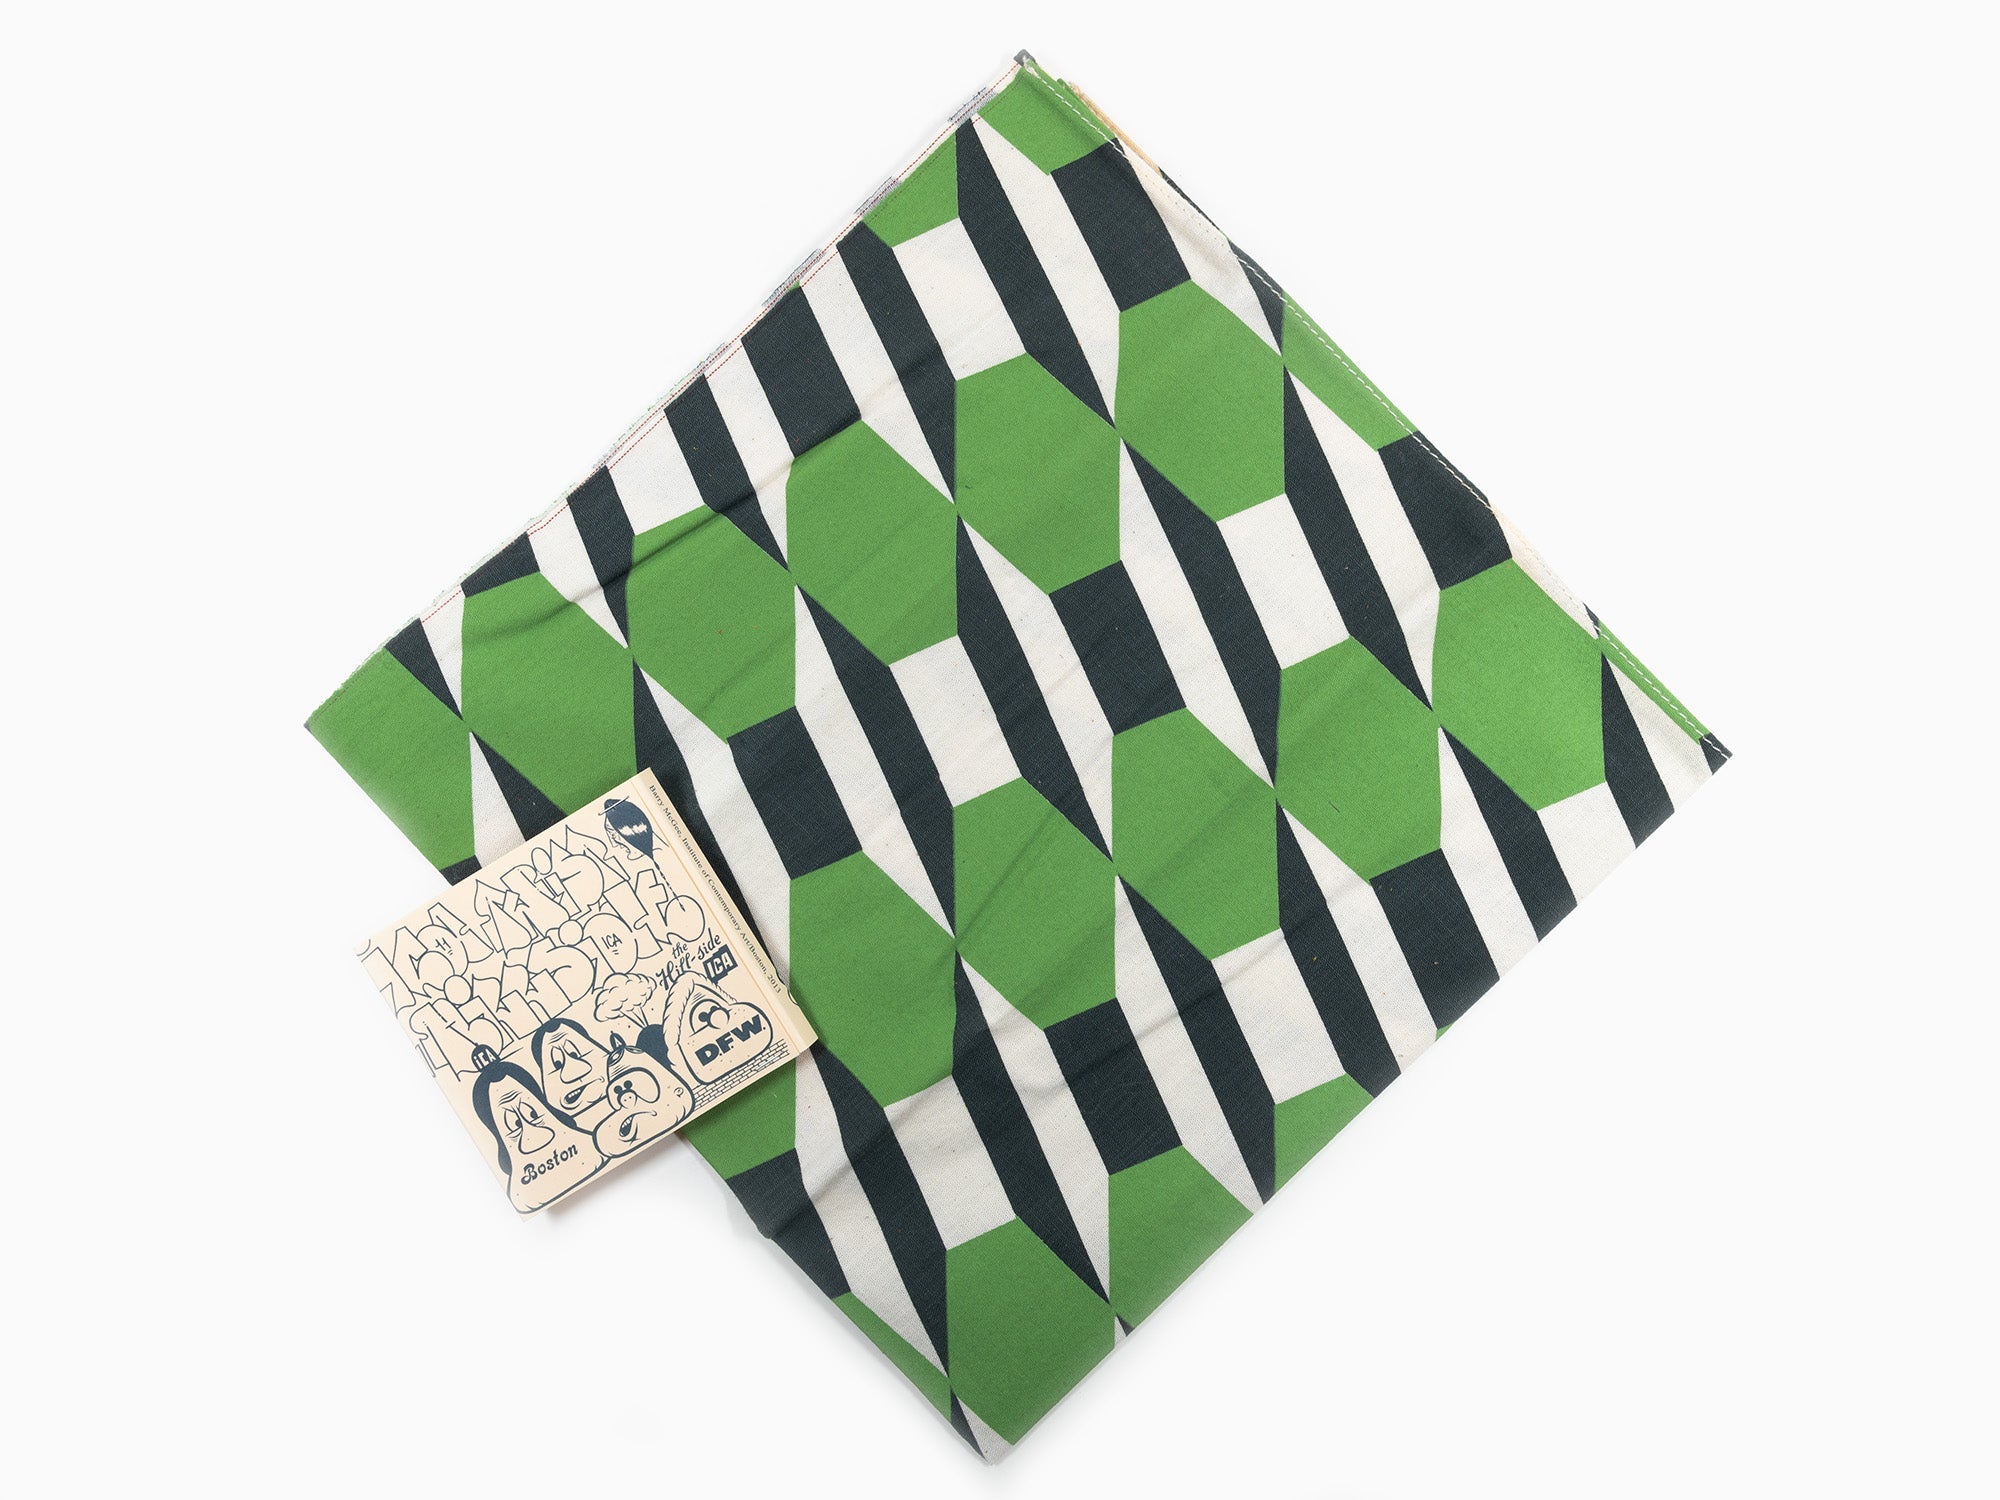 Barry McGee - Bandana Green Pattern, 2013